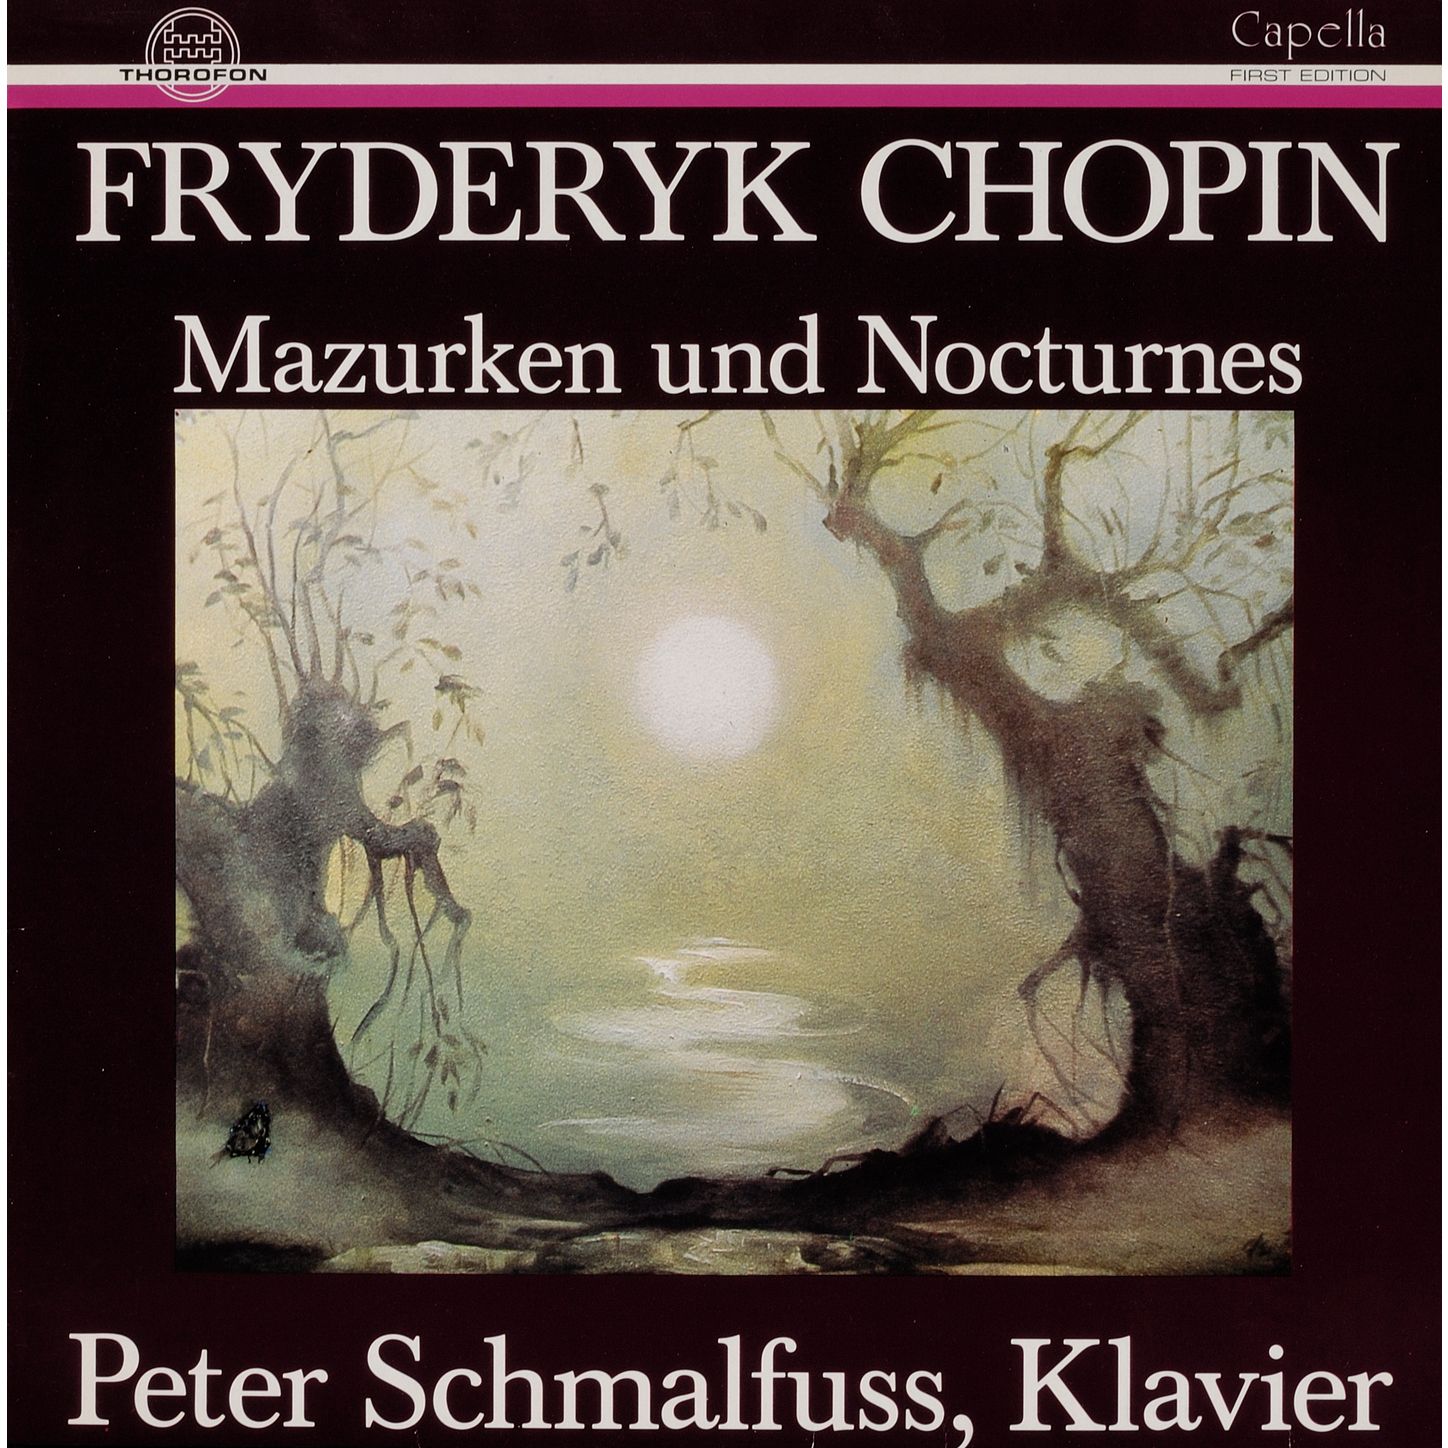 Vier Mazurken fü r Klavier in CSharp Minor, Op. 41, No. 1